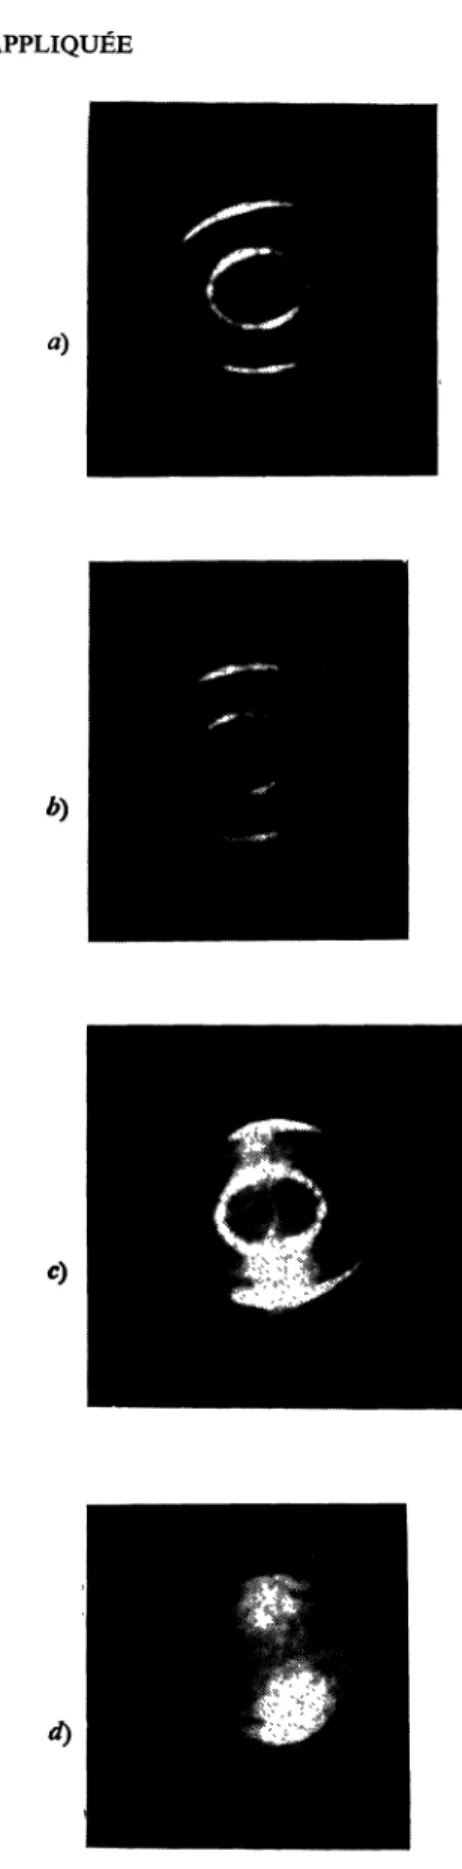 FIG.  4.  -  Analyse spectrale  avec  un  interféromètre  de  Pérot et  Fabry  de  la  lumière émise  par le  laser :  a)  référence : laser continu  seul ;  b)  laser  à  flash,  cas  de  synchronisation totale ; c)  laser  à  flash,  cas  de  synchronisa